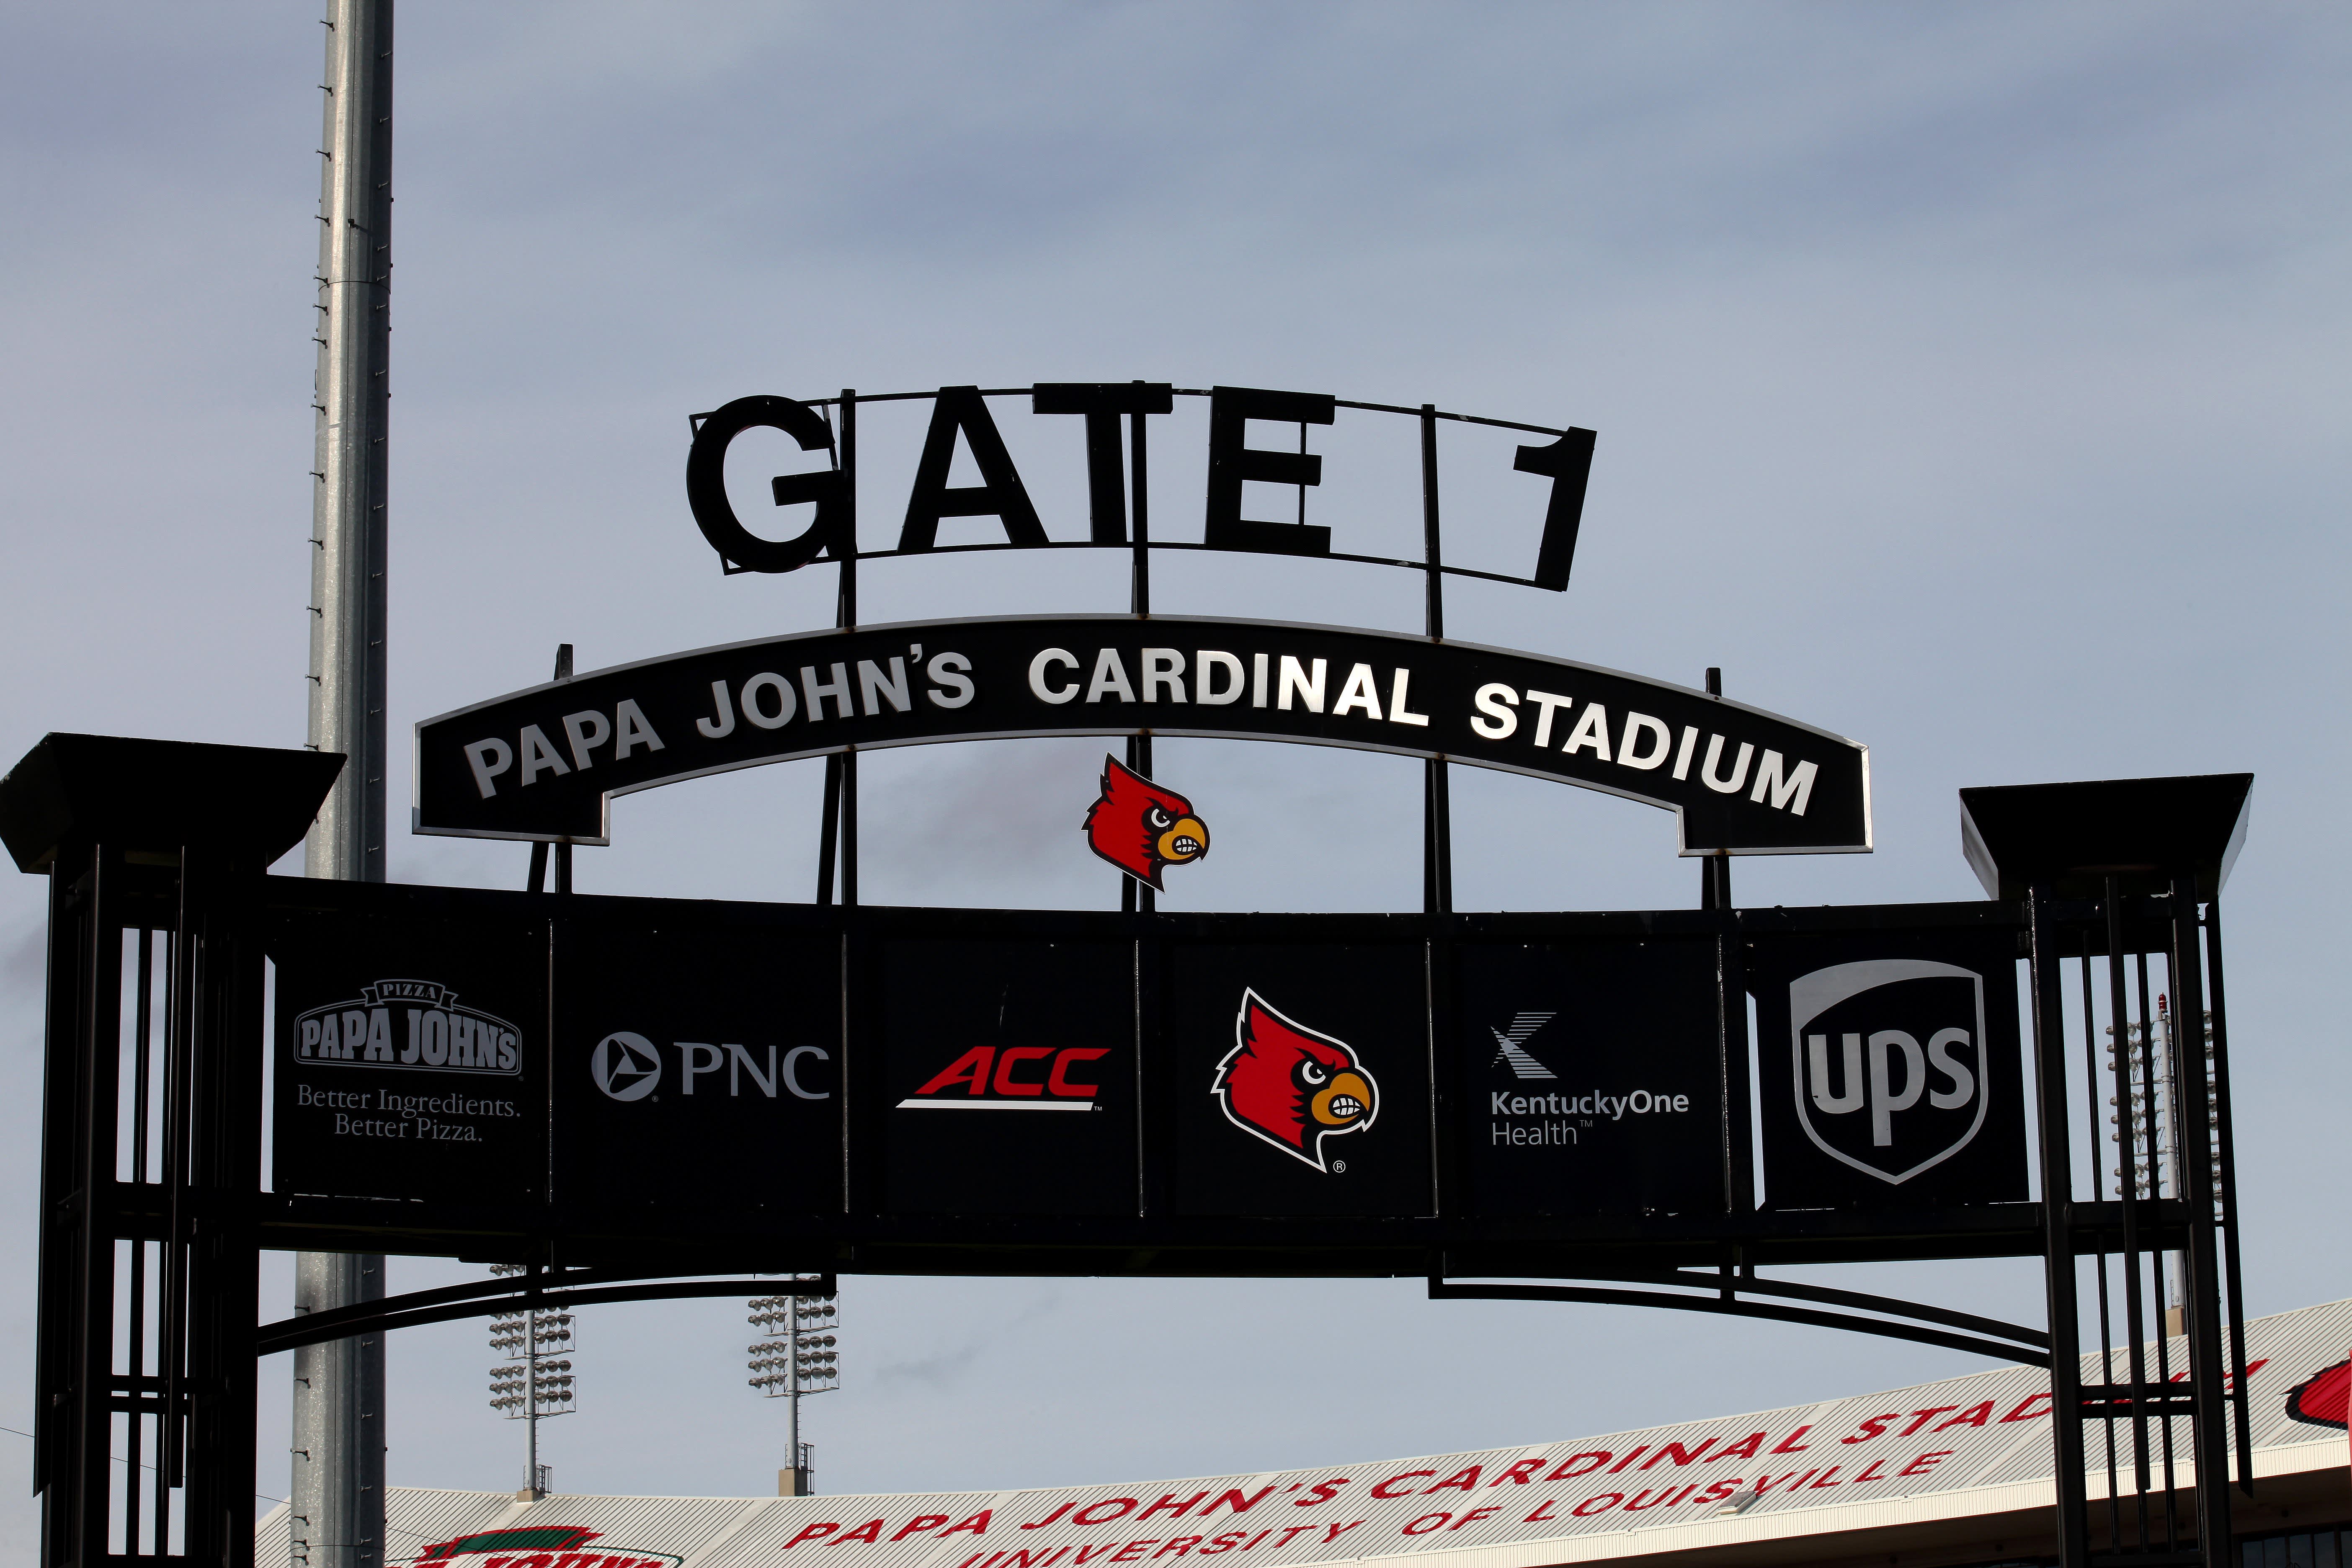 Louisville Cardinals Papa John's Stadium Blanket